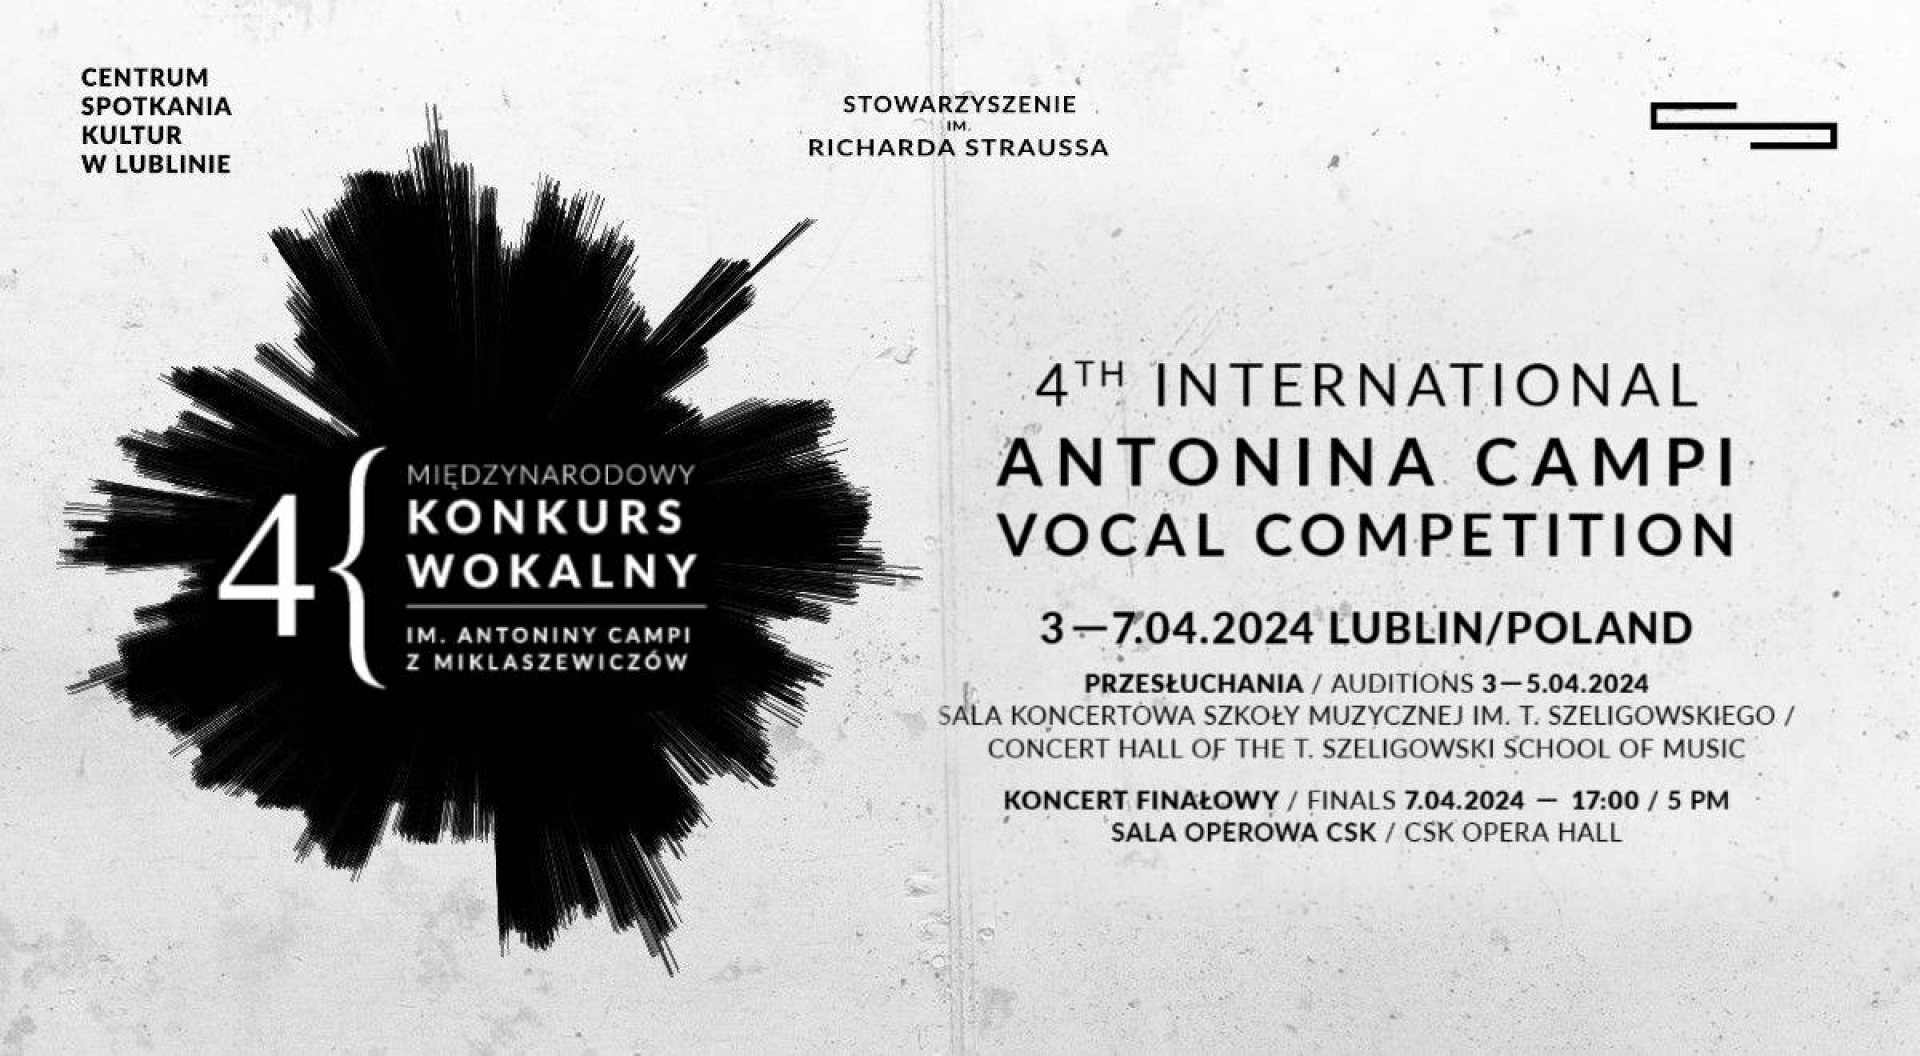 7.04.2024 – IV Międzynarodowy Konkurs Wokalny im Antoniny Campi z Miklaszewiczów, Lublin